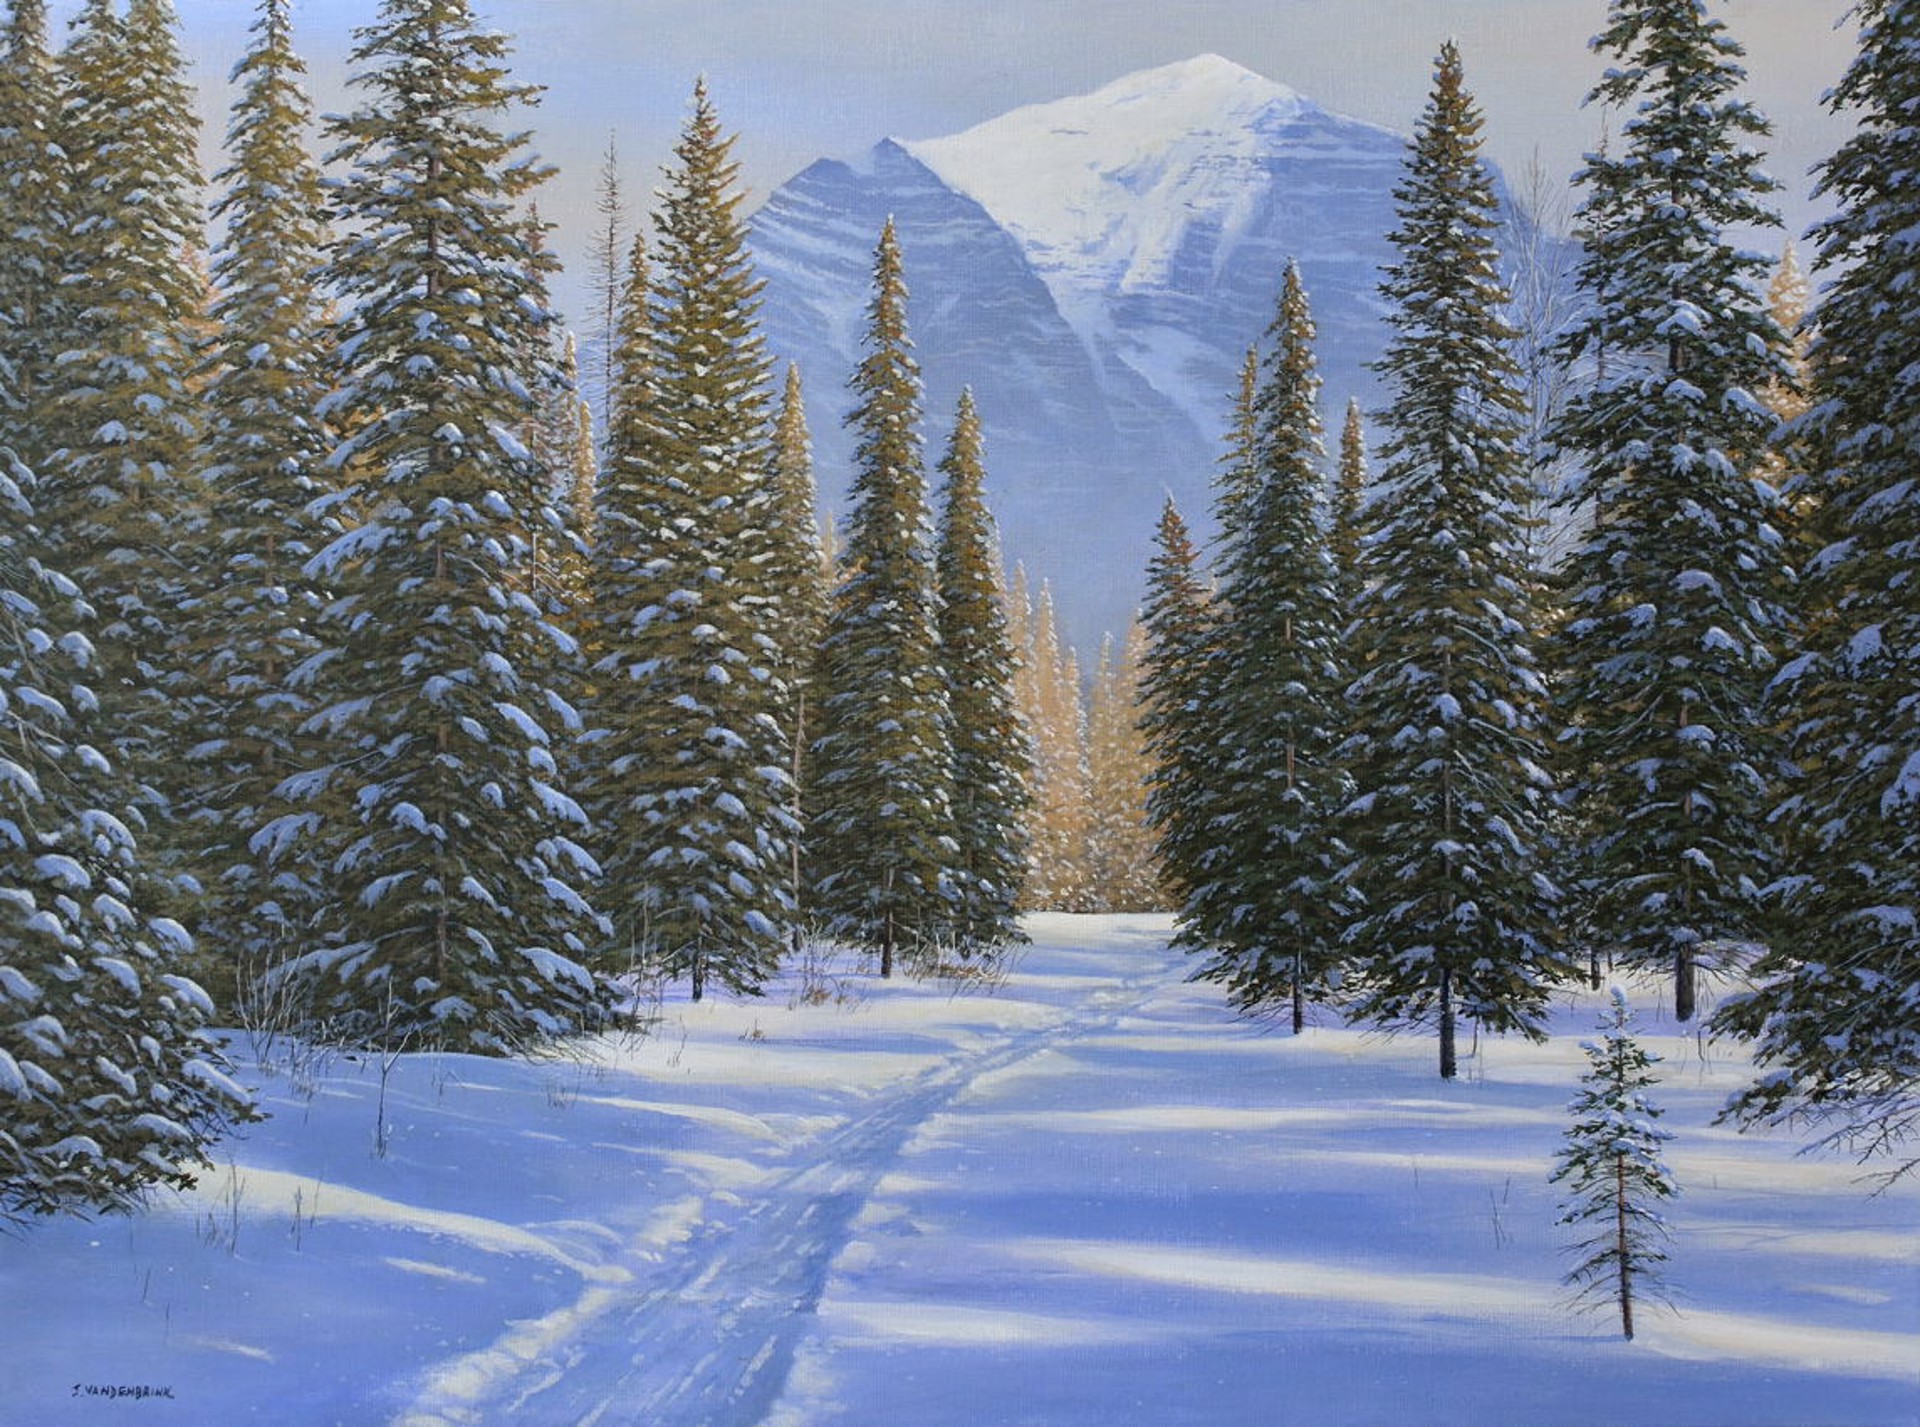 A Walk Through the Snow by Jake Vandenbrink